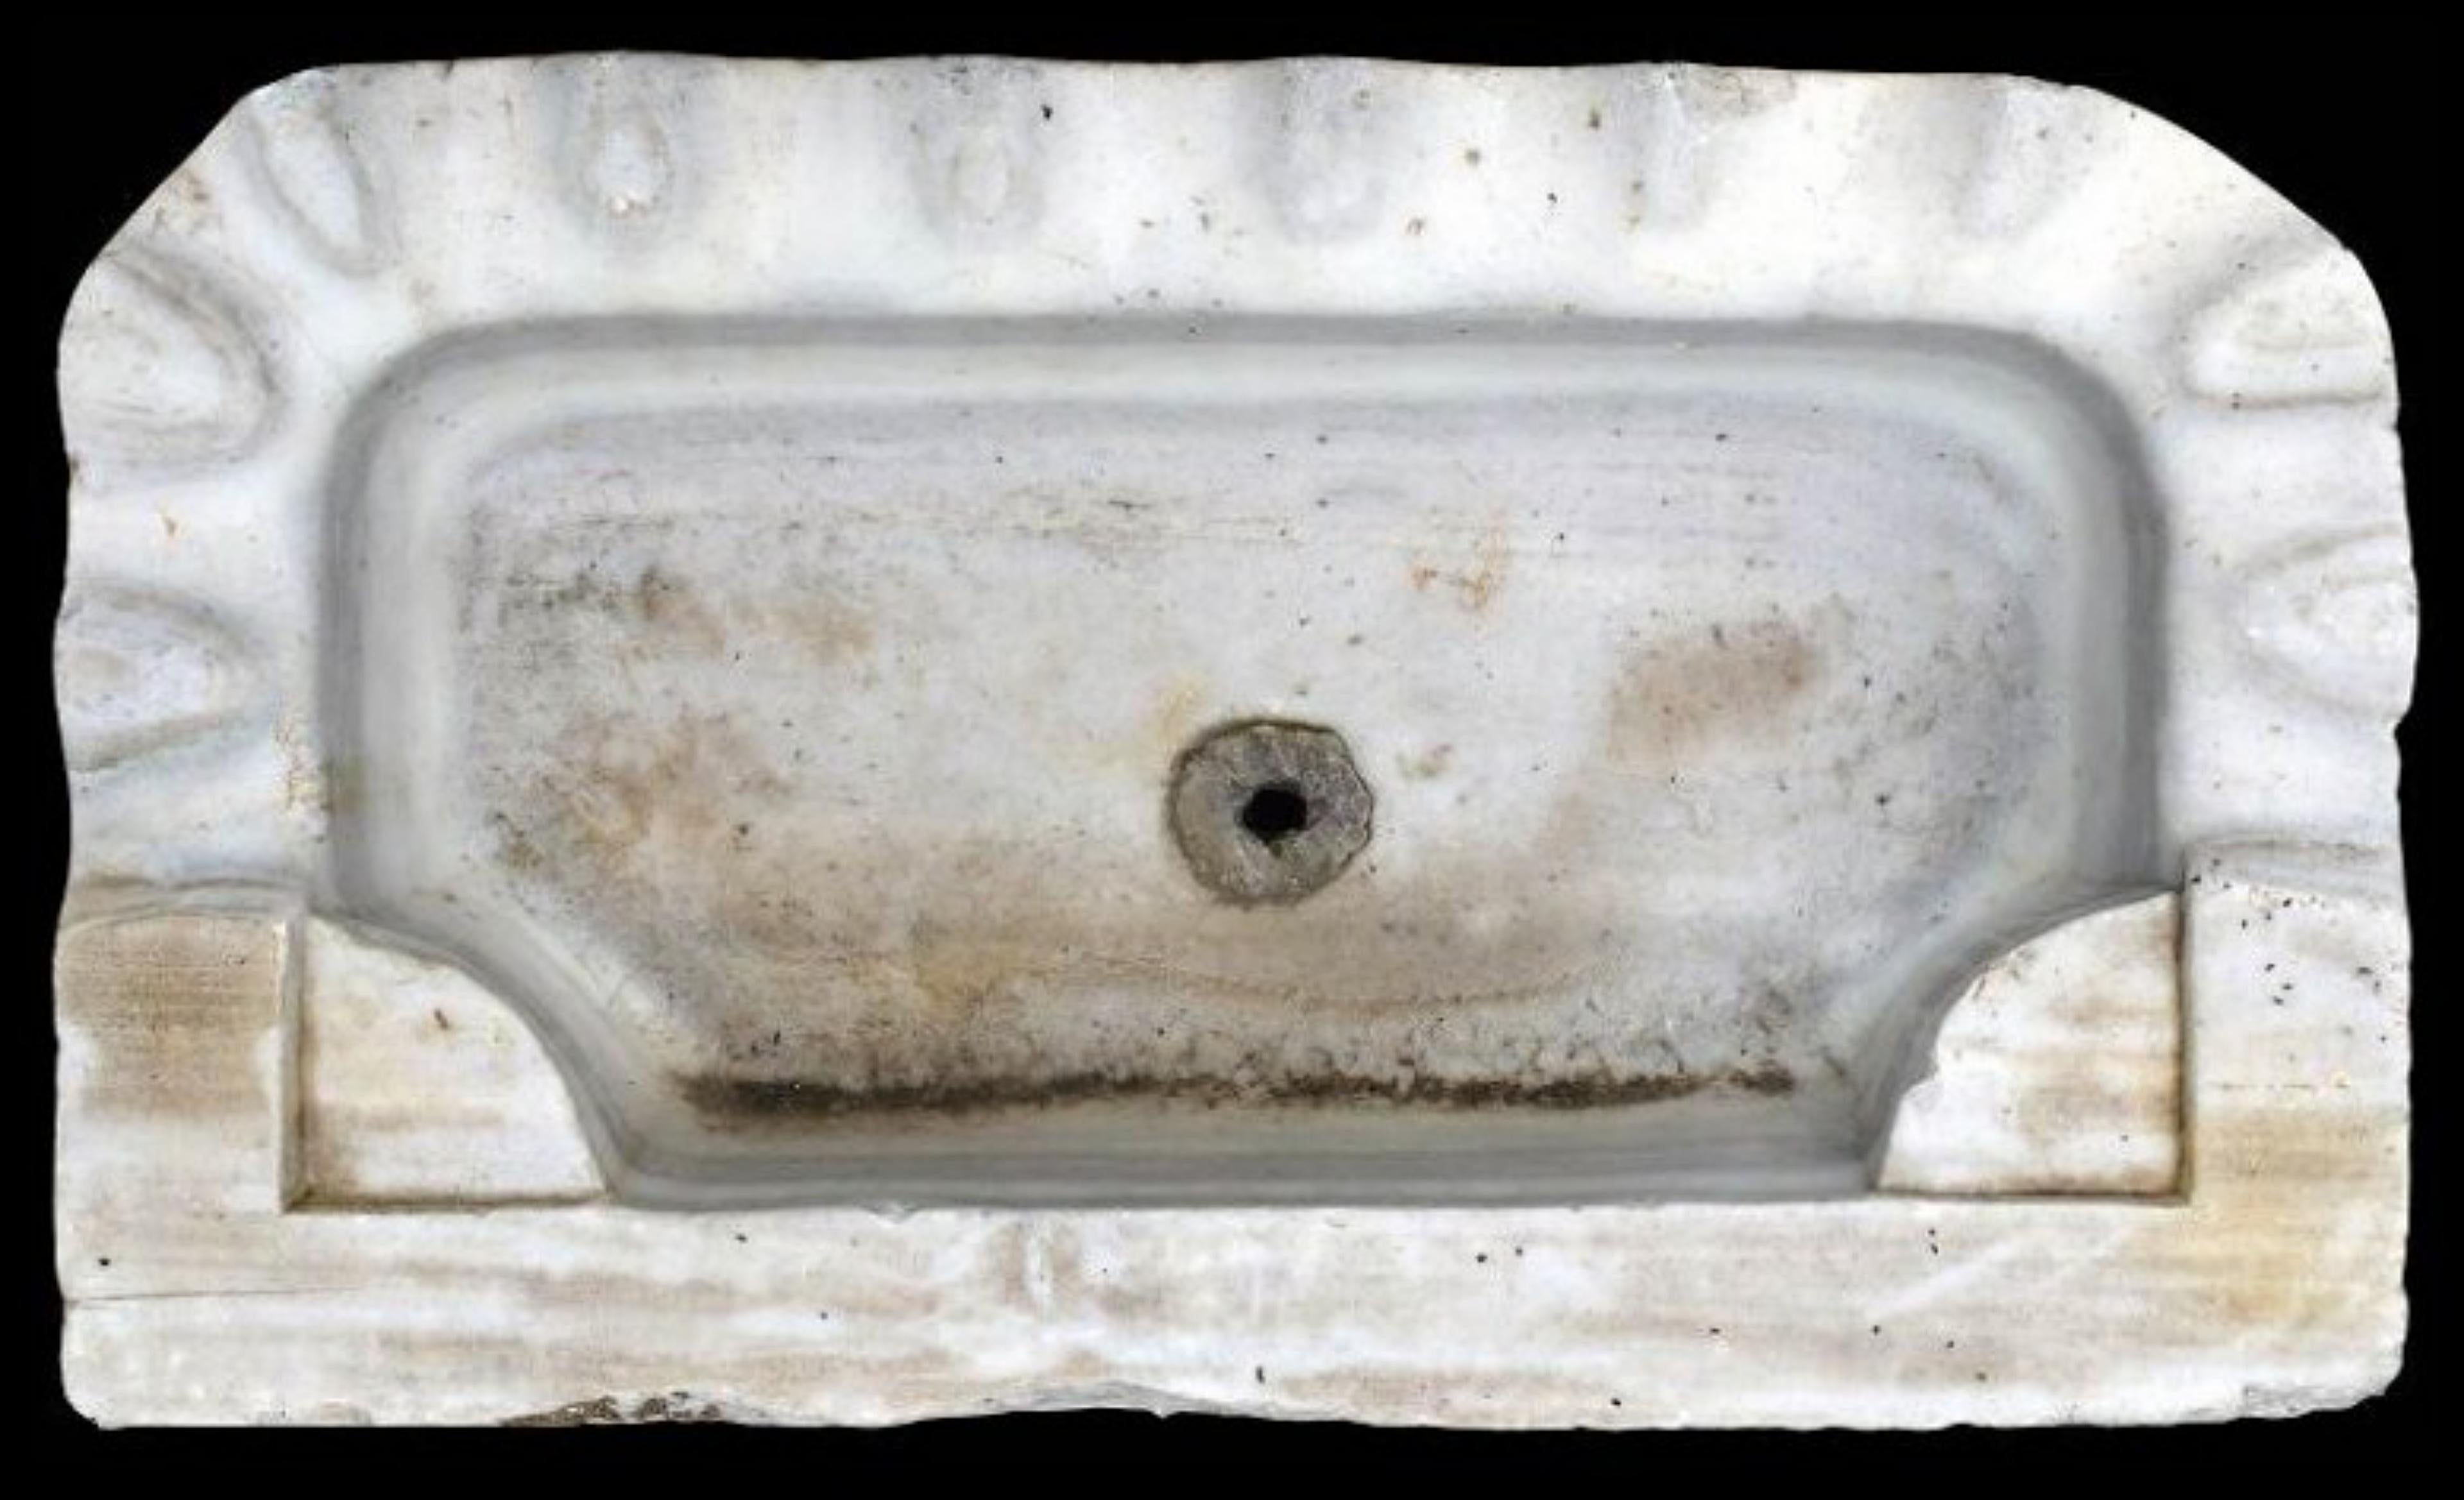 ANTIQUE ORIGINAL MARBLE WASHBASIN 18. Jahrhundert

Originales antikes Waschbecken aus weißem Marmor.
Abmessungen des Lochs cm.44x21x10

BREITE 55cm
TIEFE 33cm
DICKTHEIT 17cm